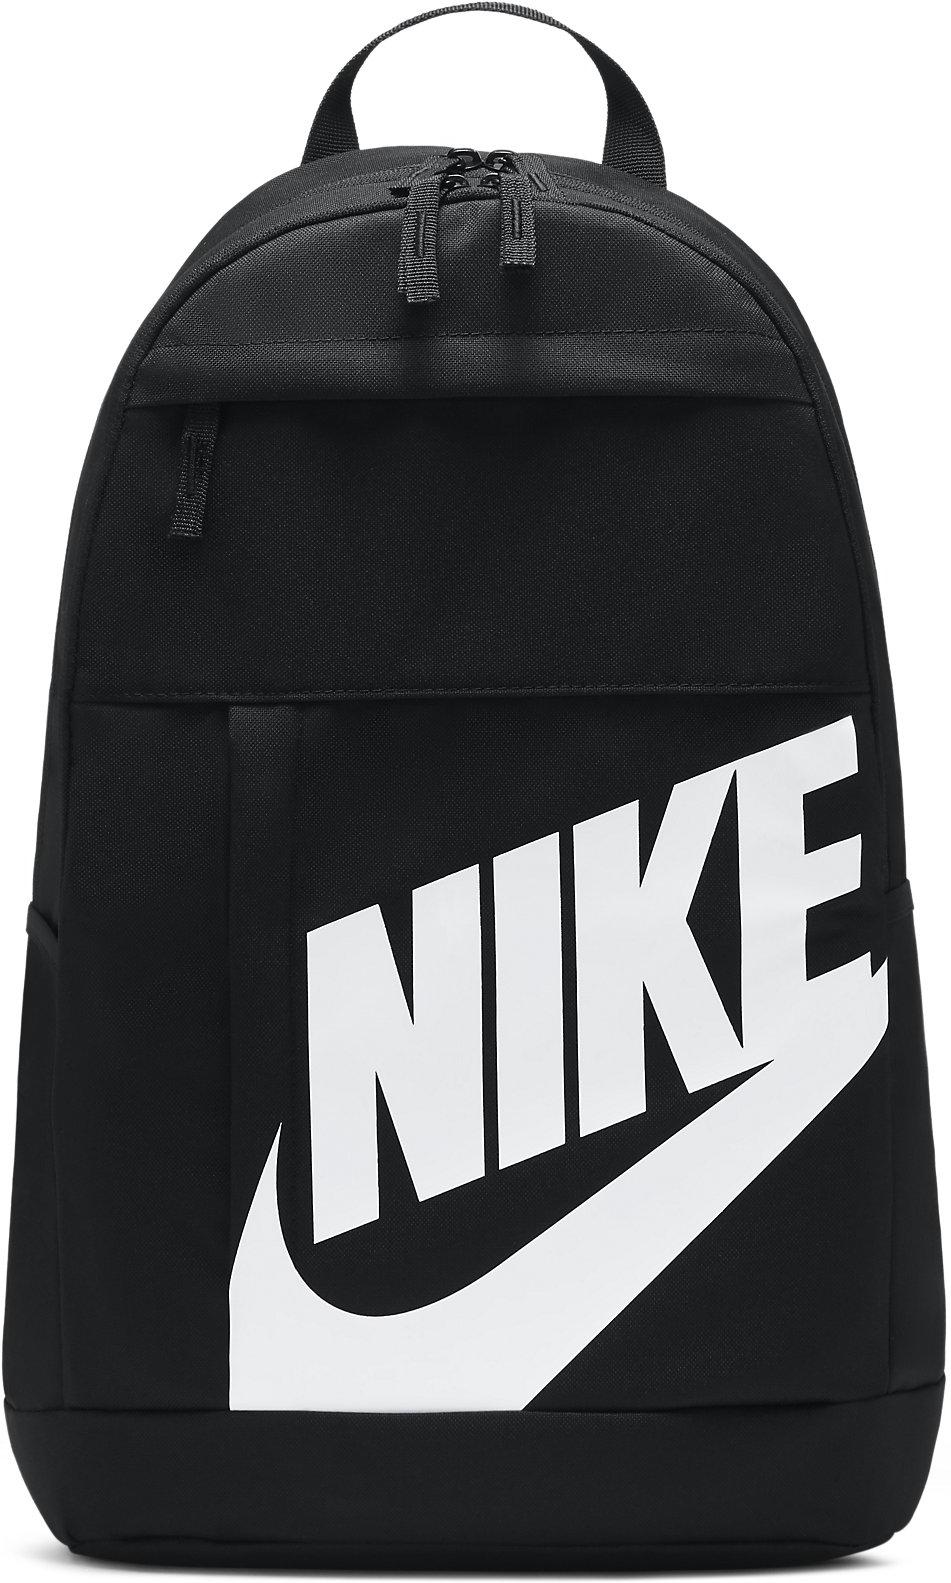 Rucksack Nike Elemental Backpack